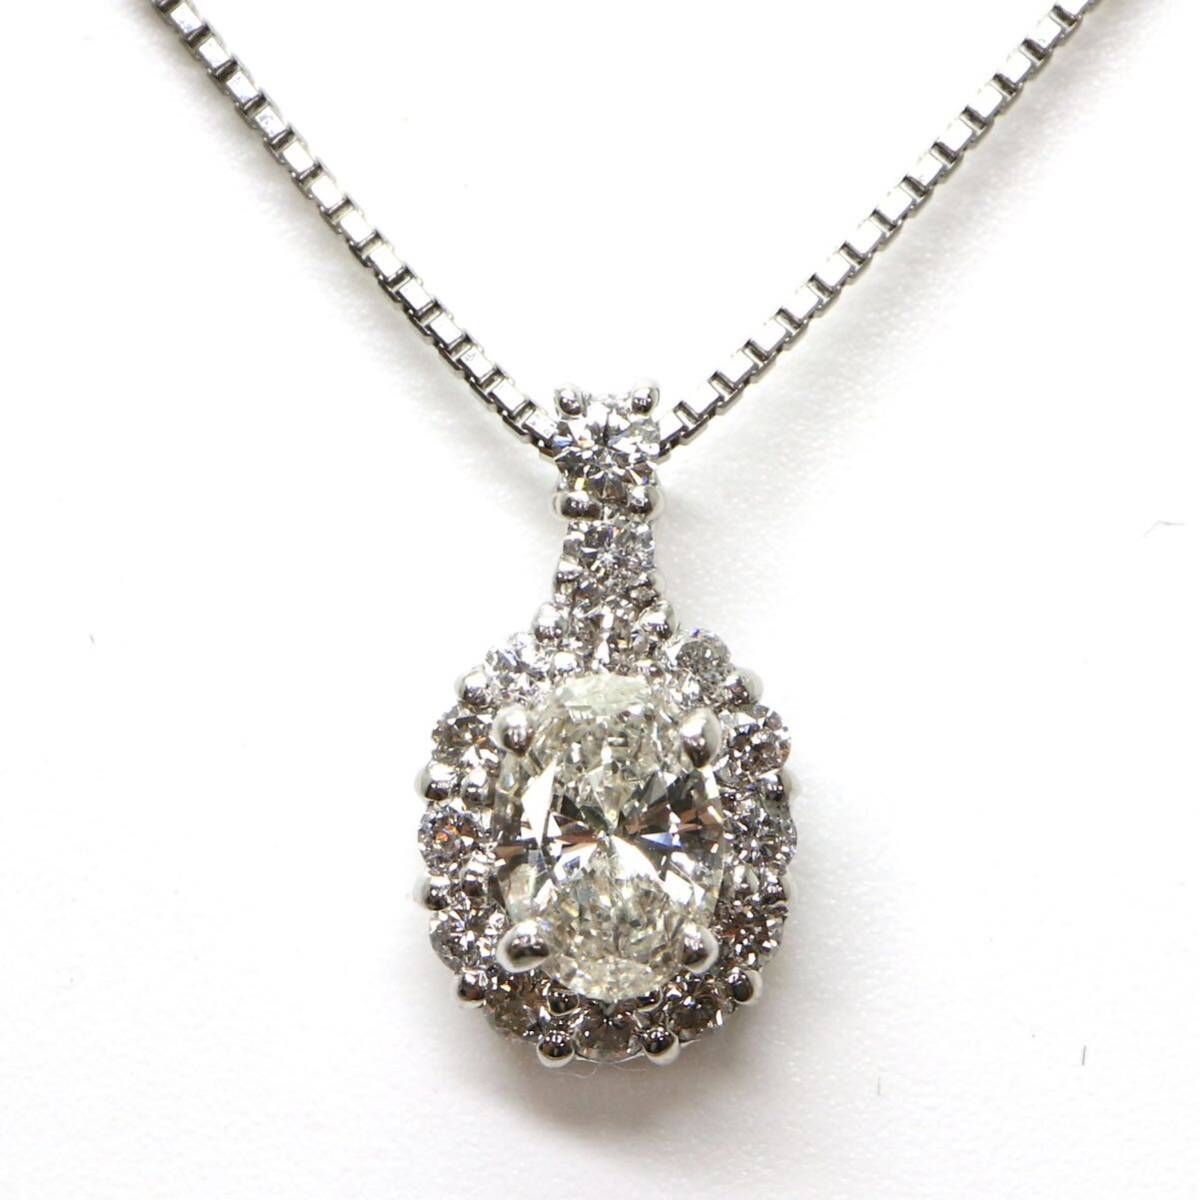 ◆Pt900/Pt850 天然ダイヤモンドネックレス◆M 約2.9g 約40.5cm diamond necklace jewelry ジュエリー EB3/EB3の画像1